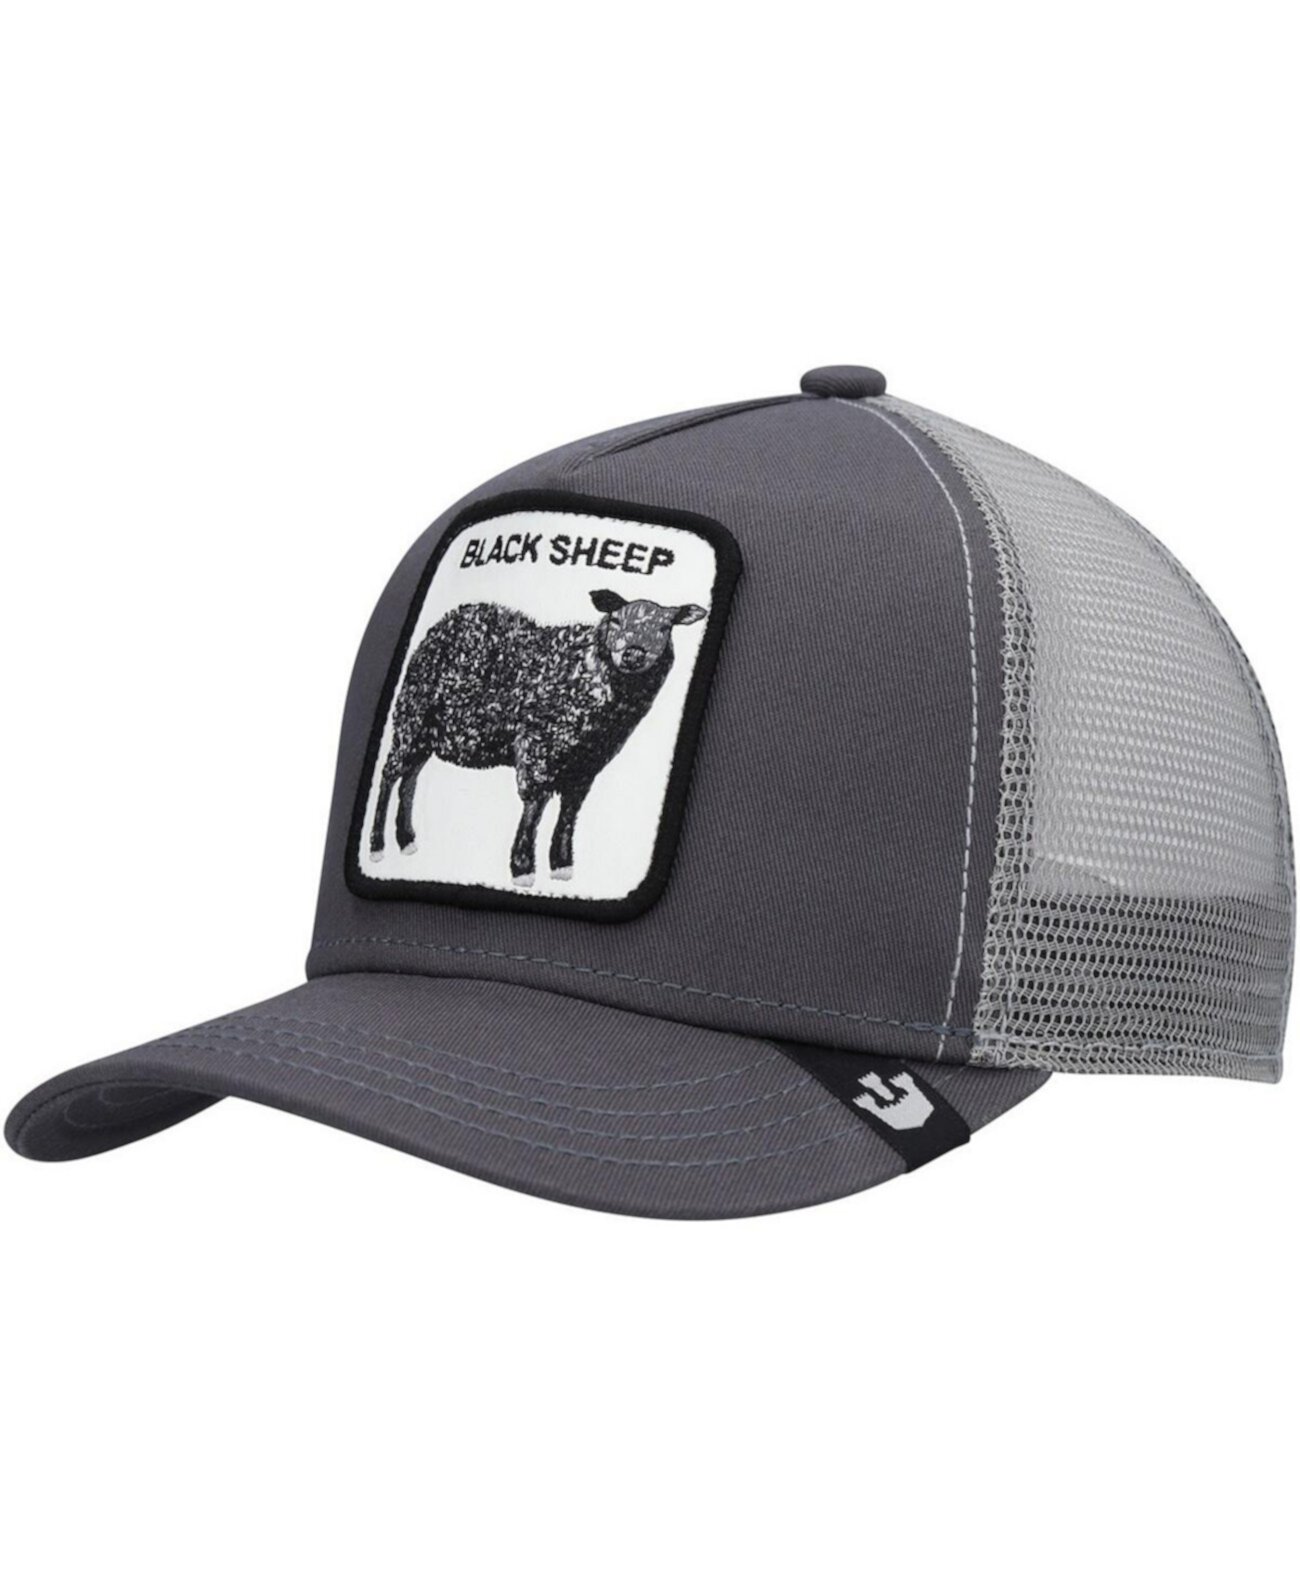 Регулируемая шапка Big Boys Grey Black Sheep Trucker Goorin Bros.